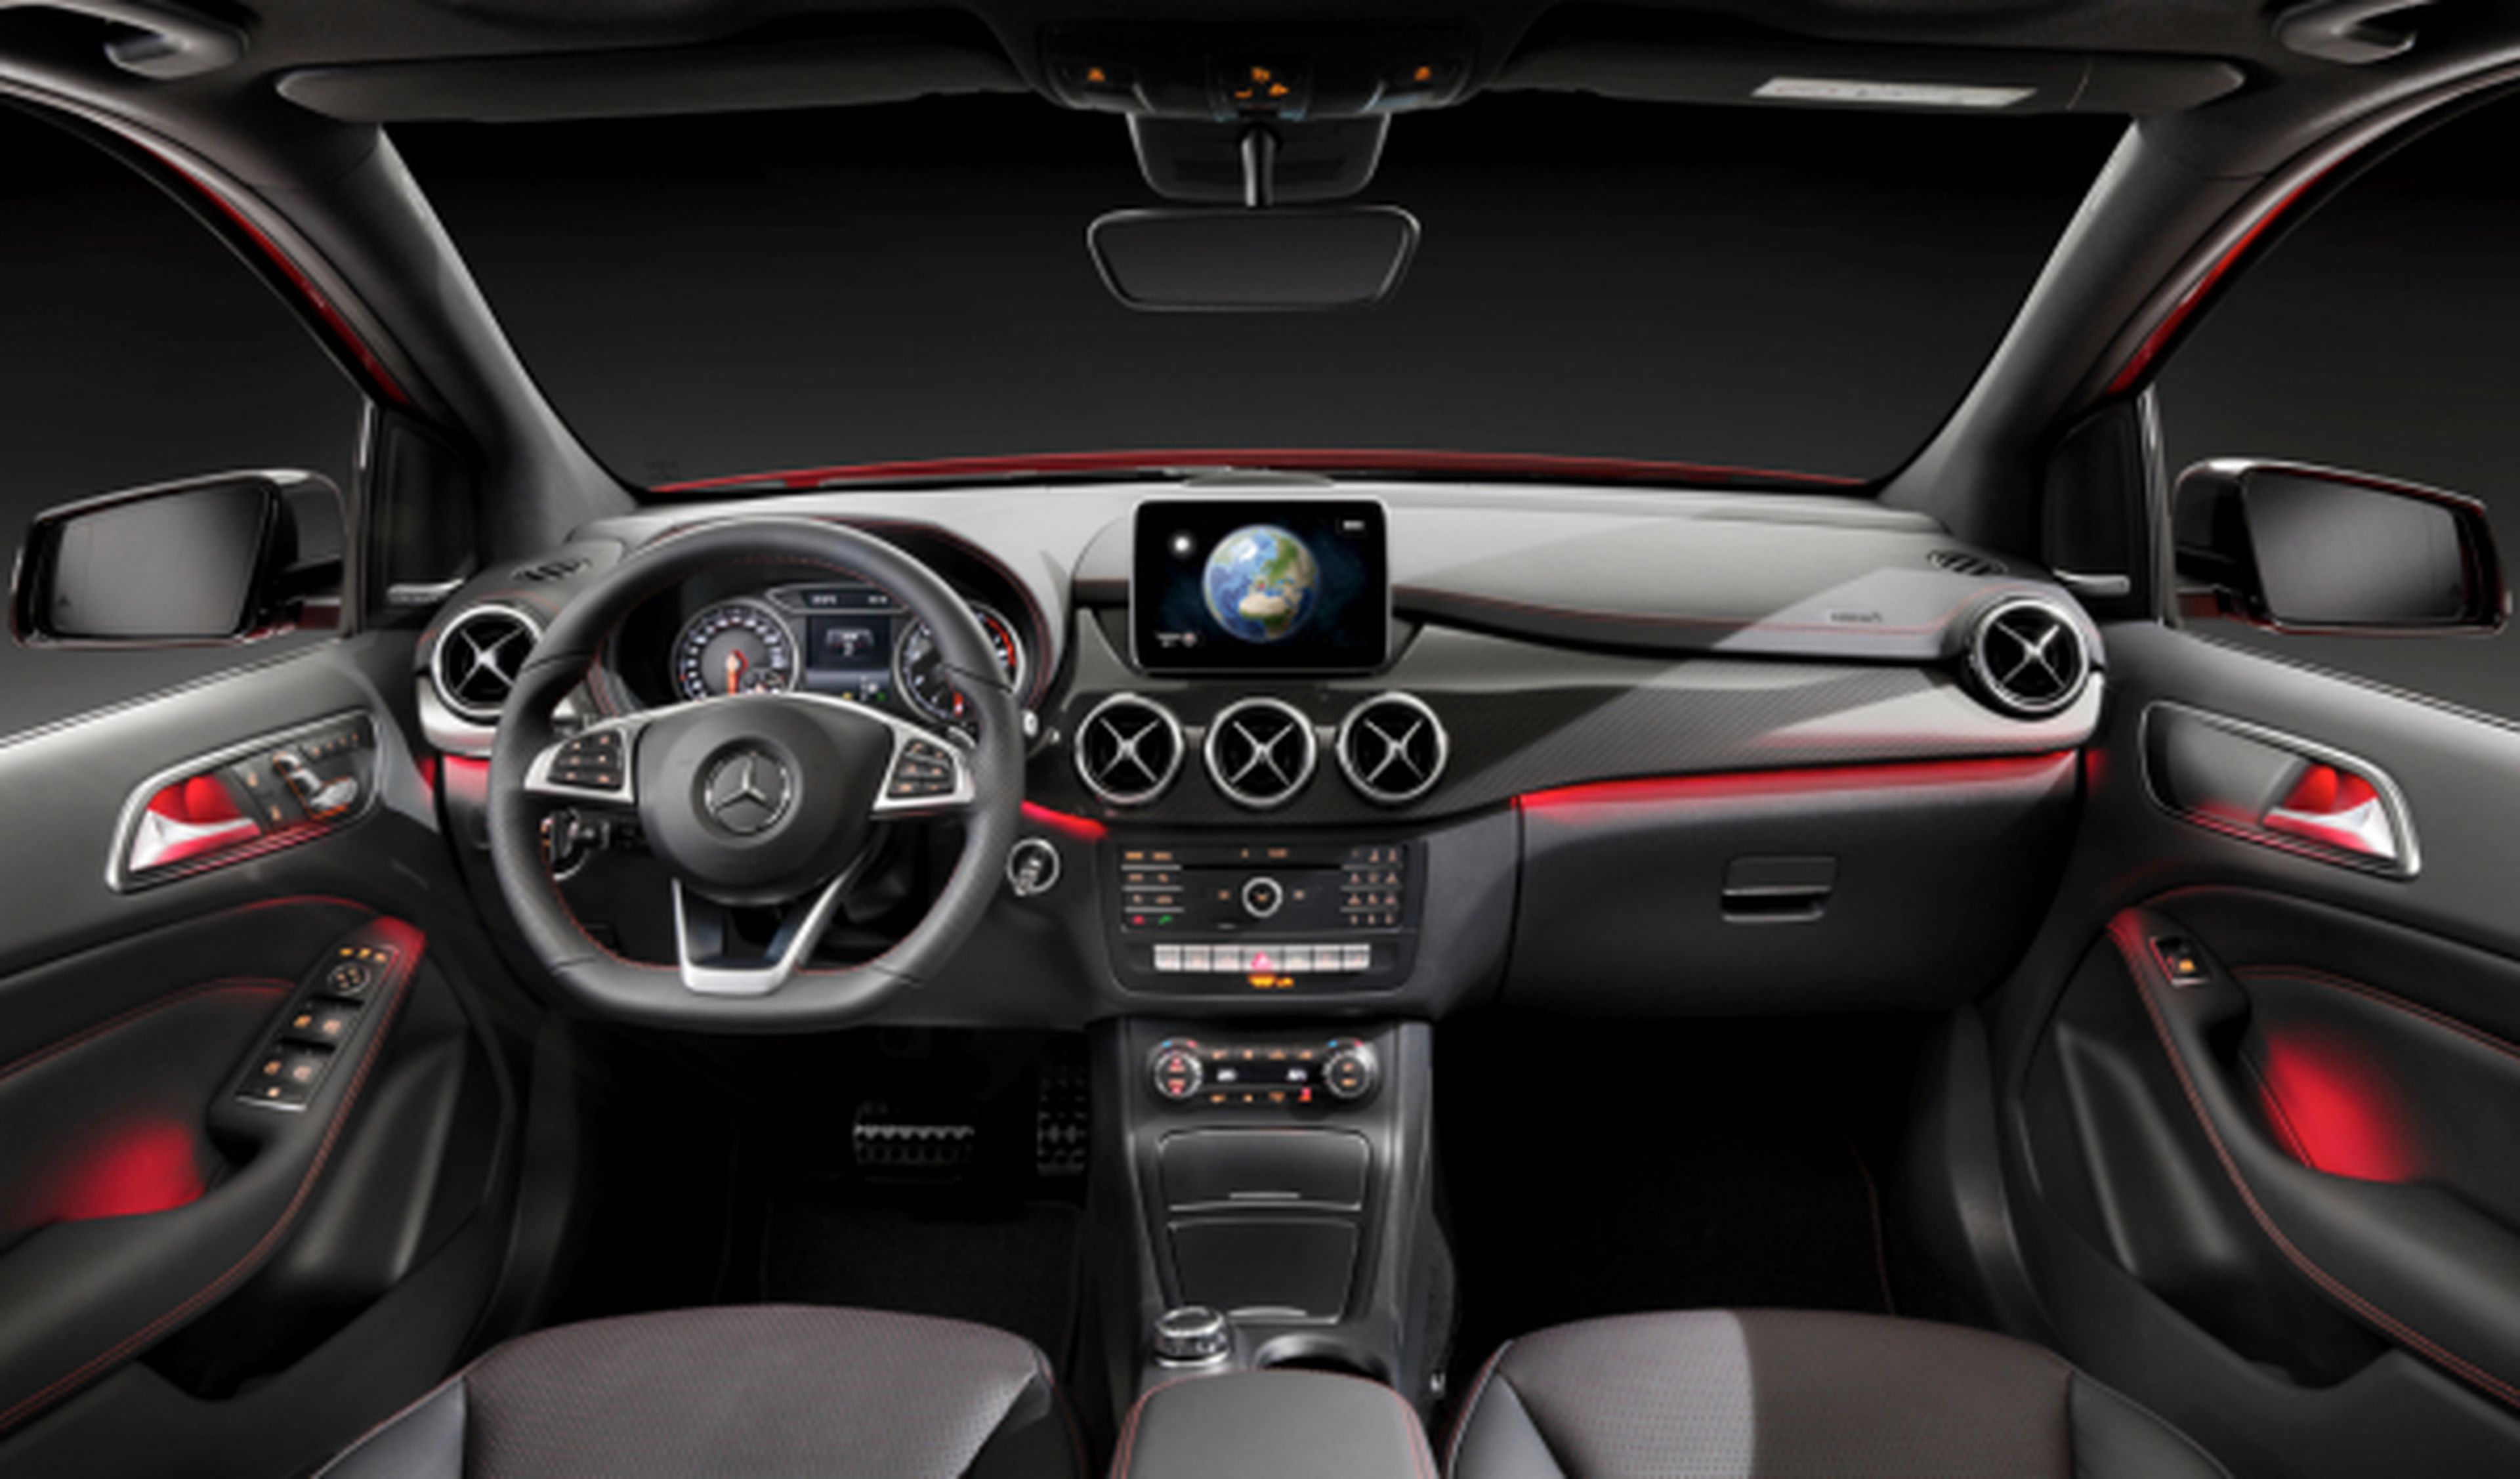 Presentado el Mercedes Clase B 2014: desde 27.102 euros